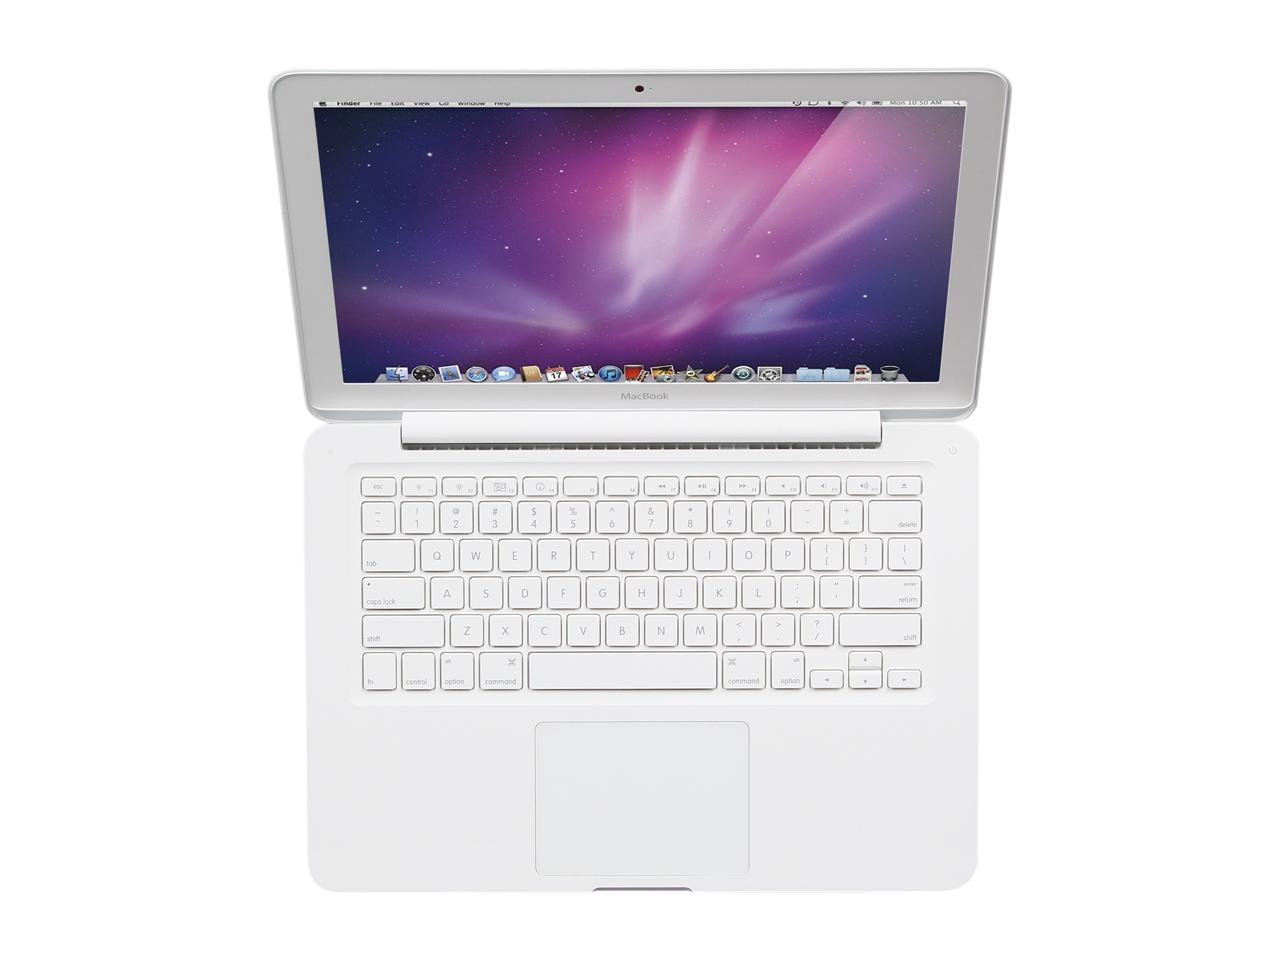 apple-late-2009-13.3-inch-macbook-a1342-white-c2d - 2.26ghz processor, 2gb ram, 940m - 256mb gpu-mc207ll/a-5